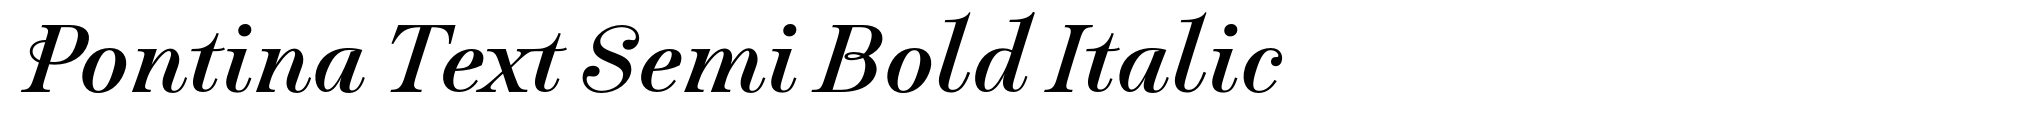 Pontina Text Semi Bold Italic image